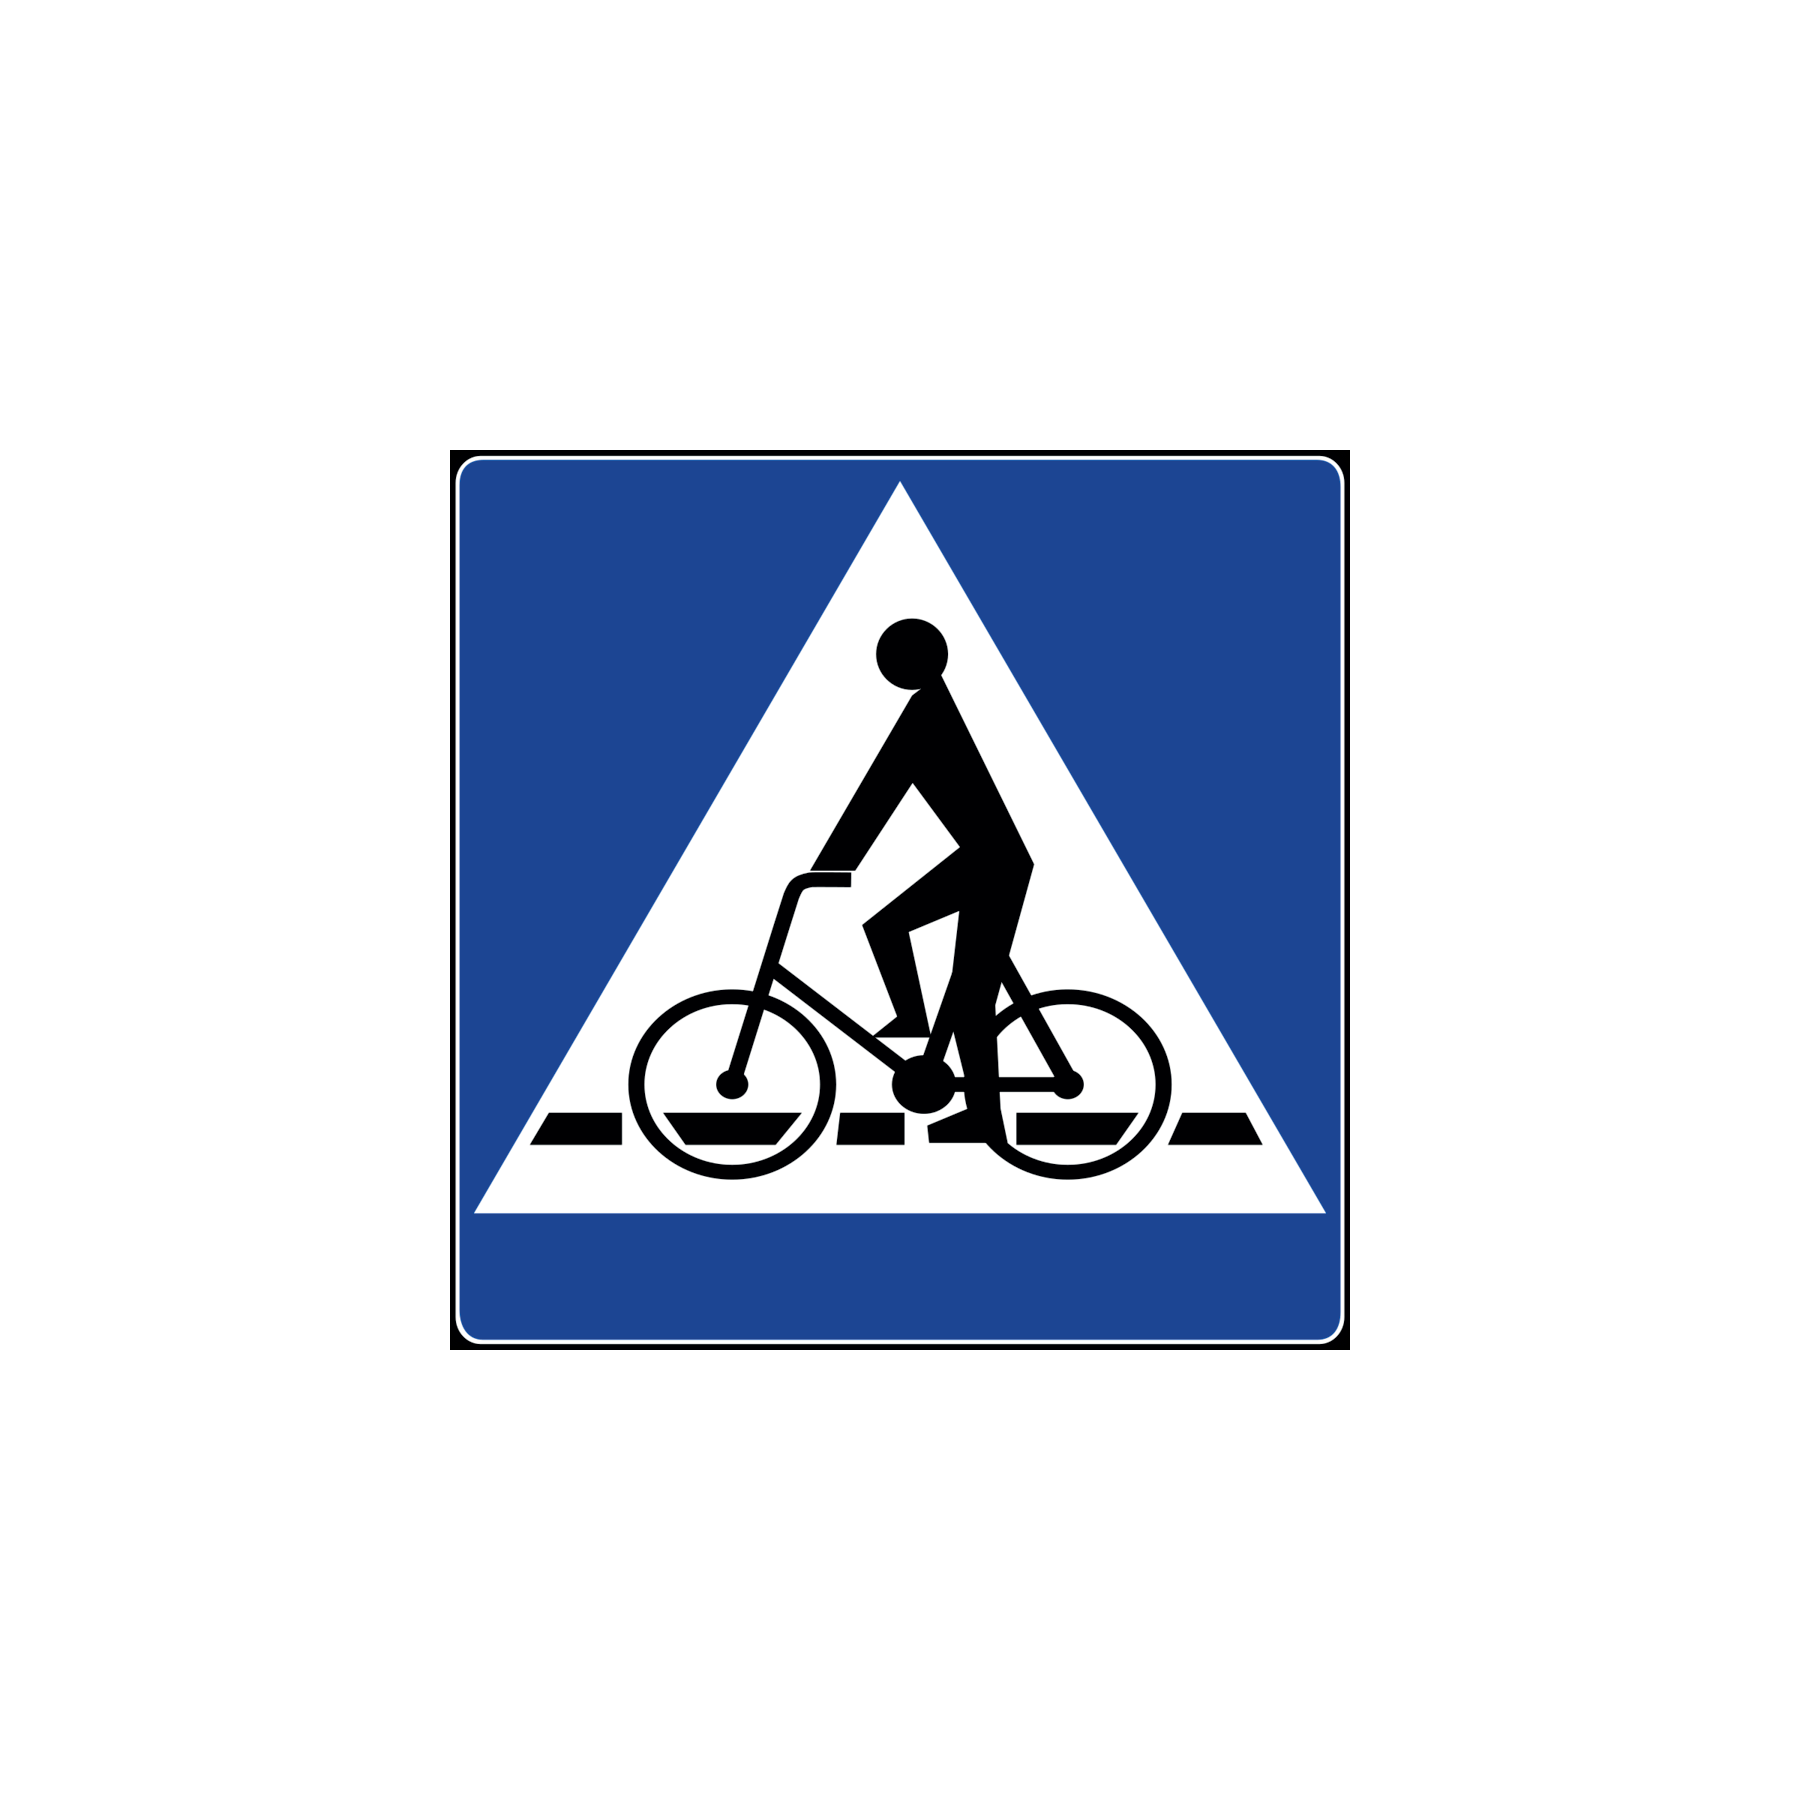 Który znak oznacza przejazd rowerowy?